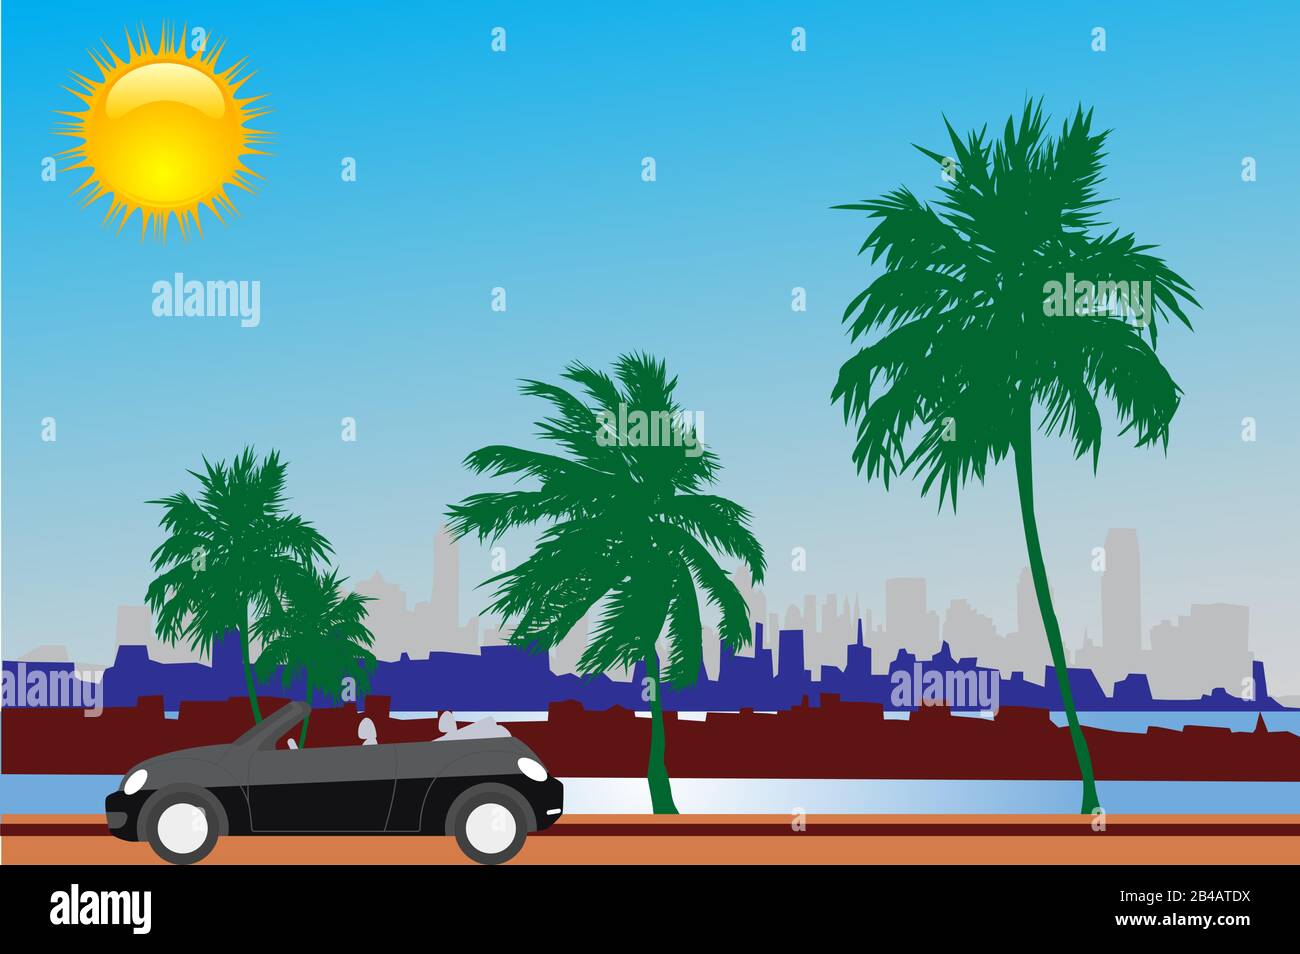 Parc de la ville avec voiture, coucher de soleil, ciel, palmiers, aire de service, navire - vecteur Illustration de Vecteur